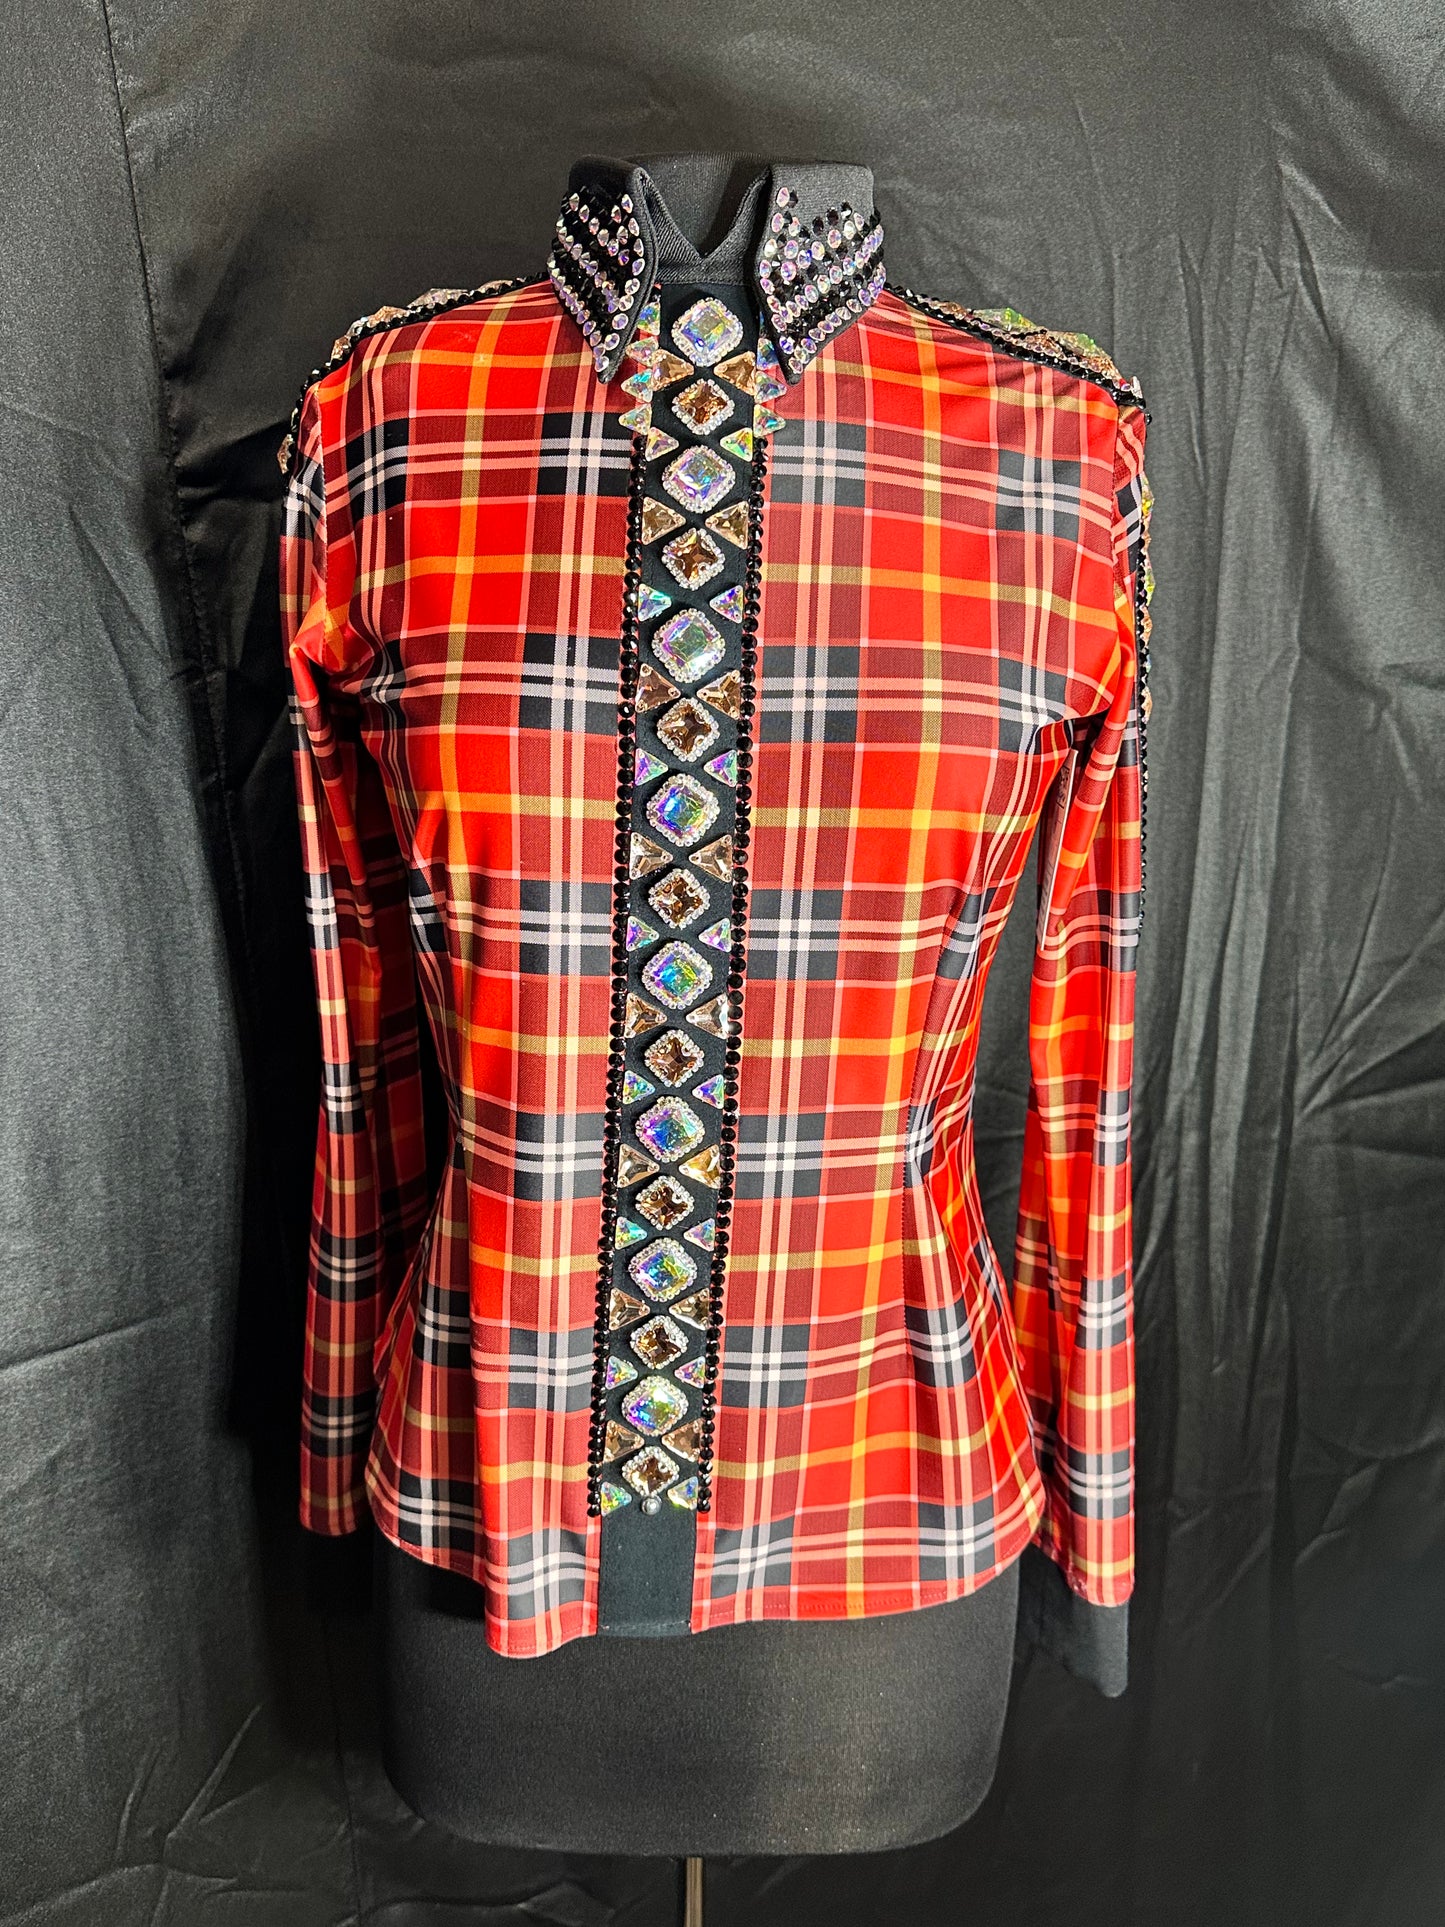 Size large back zip day shirt orange plaid